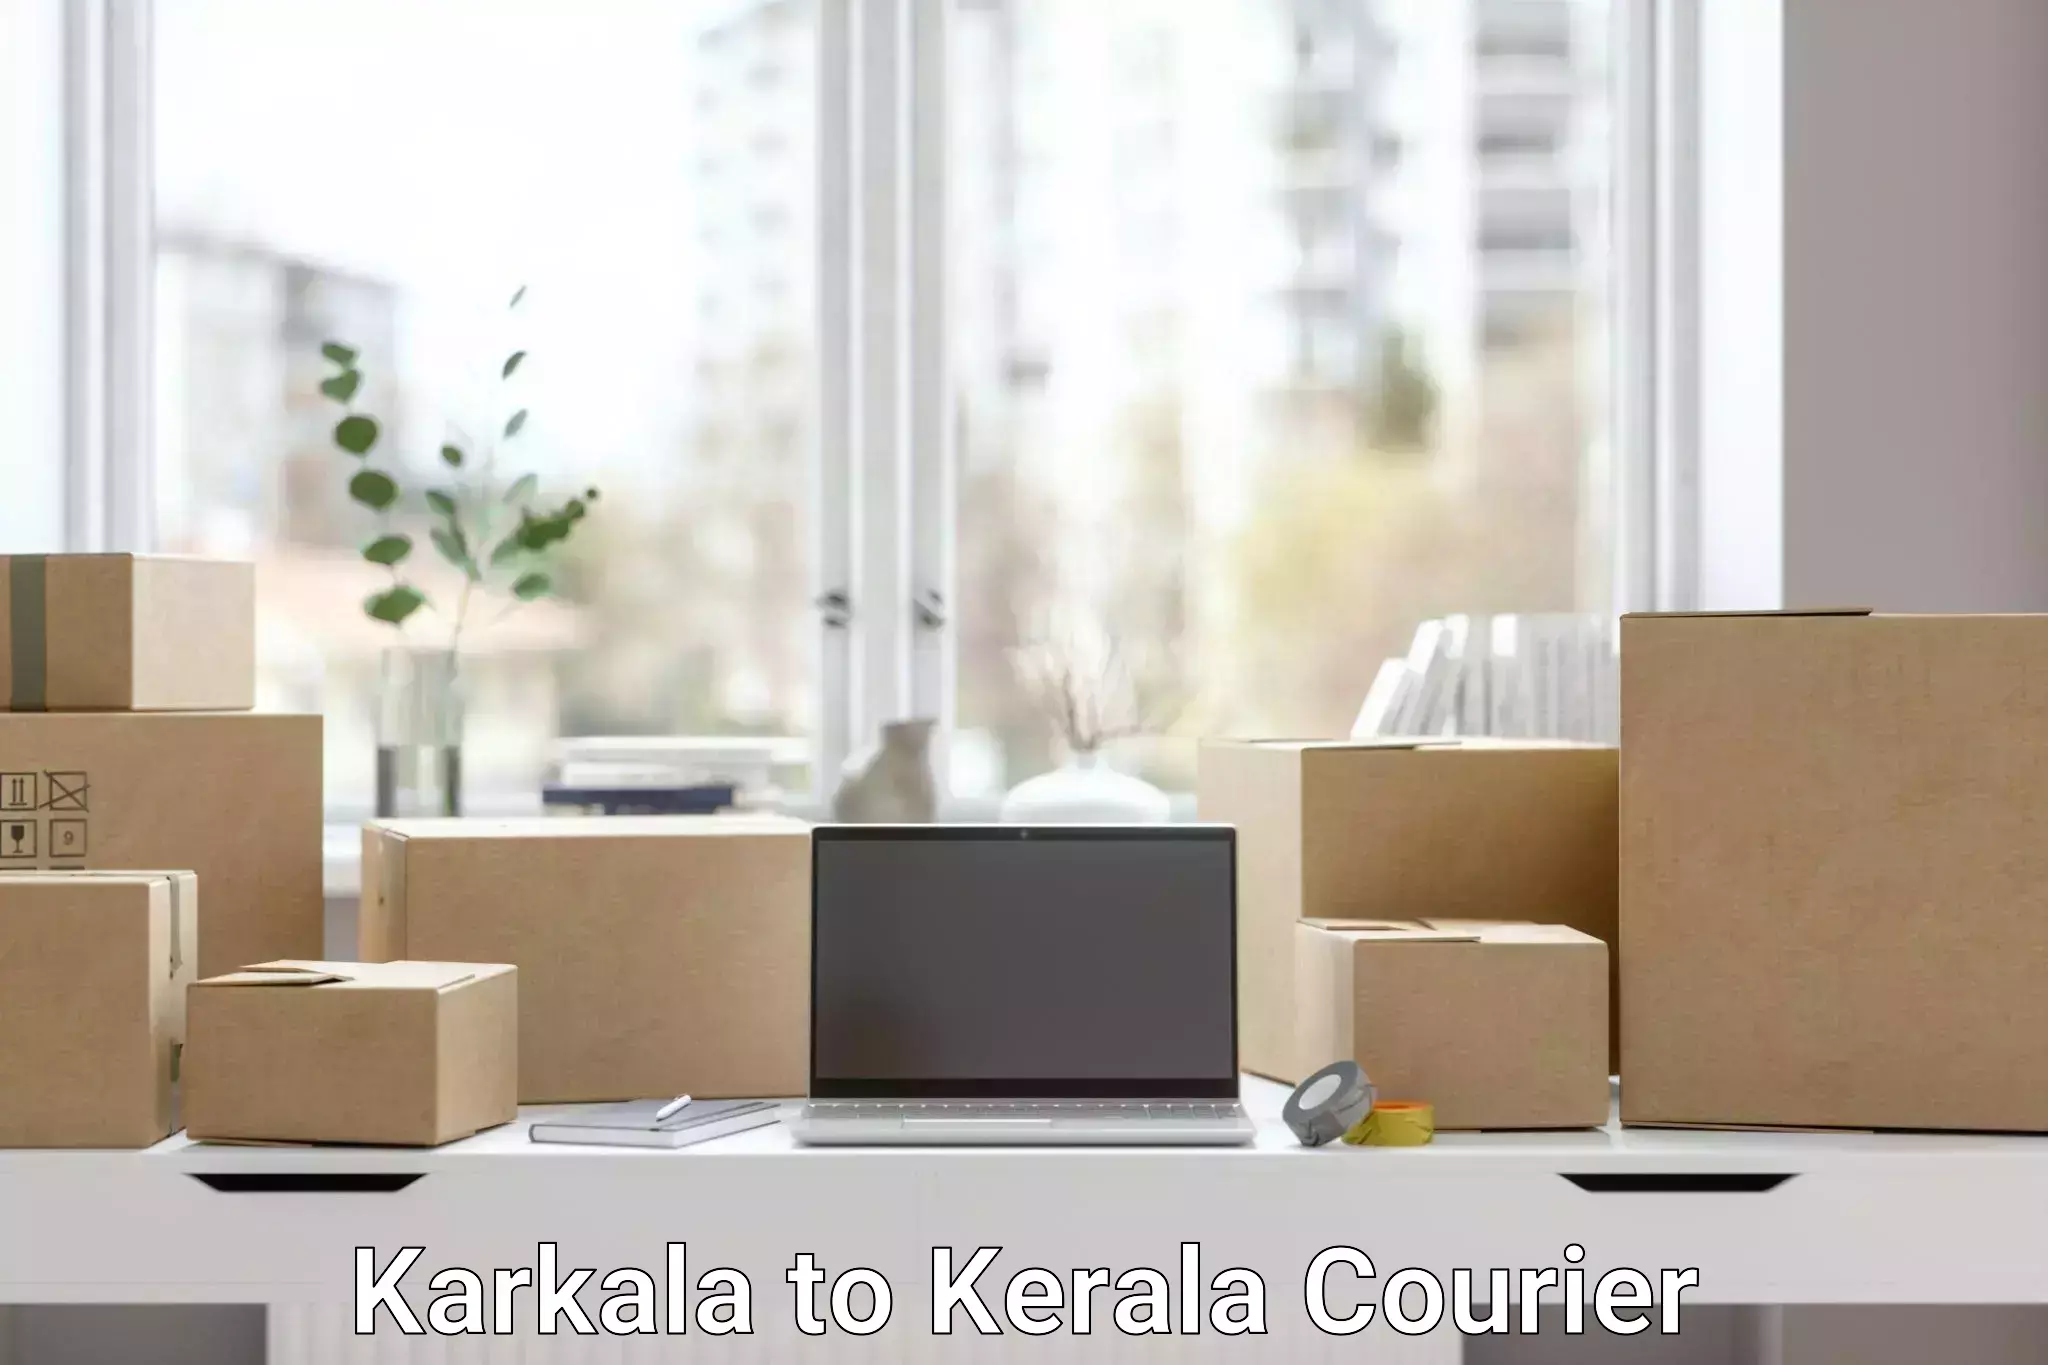 Cargo courier service Karkala to Kochi